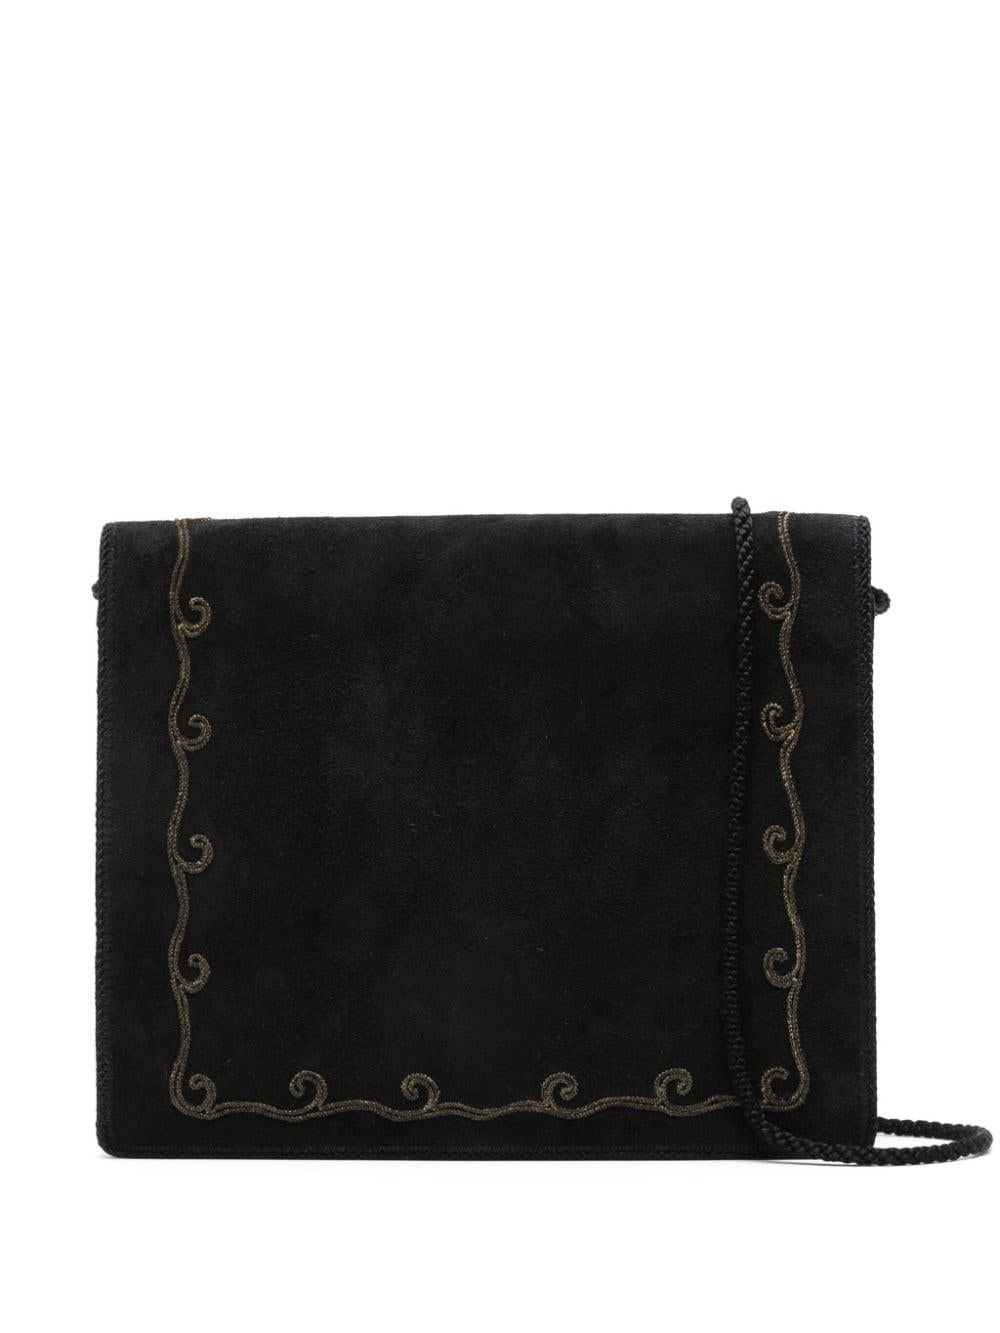 1970s Christian Dior Black Embroidered Suede Shoulder Bag For Sale 2